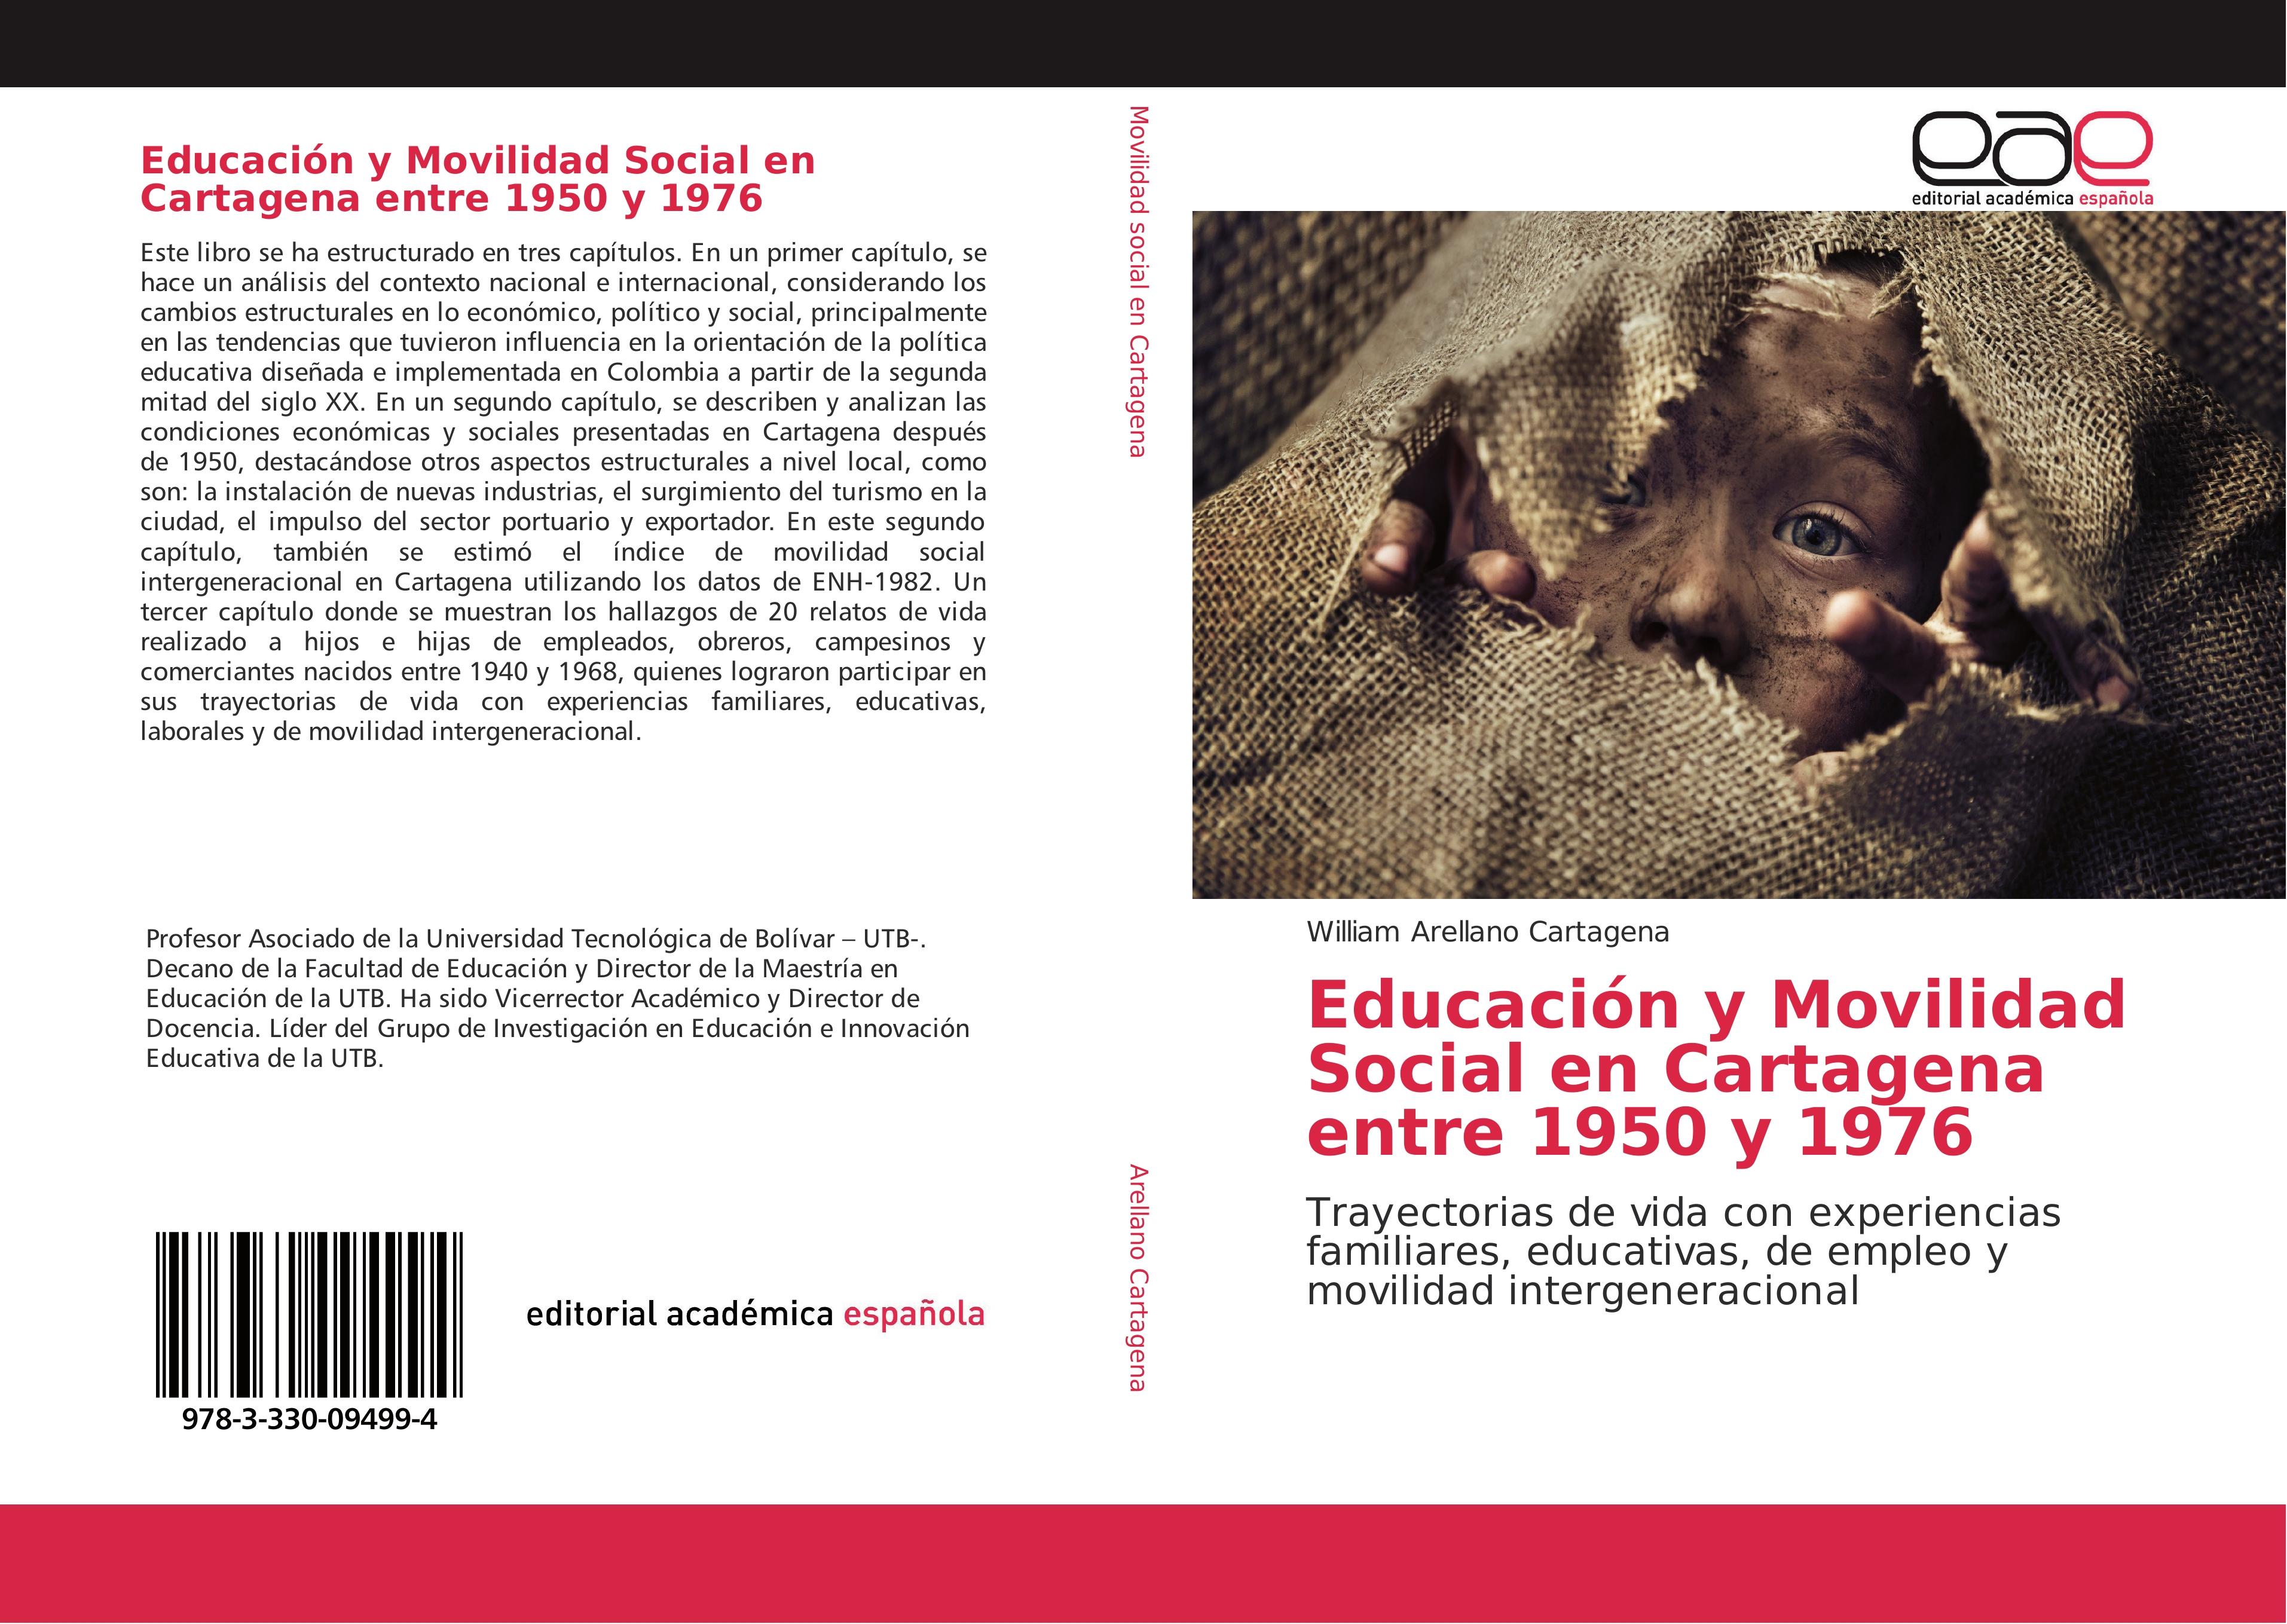 EducaciÃ³n y Movilidad Social en Cartagena entre 1950 y 1976 - William Arellano Cartagena